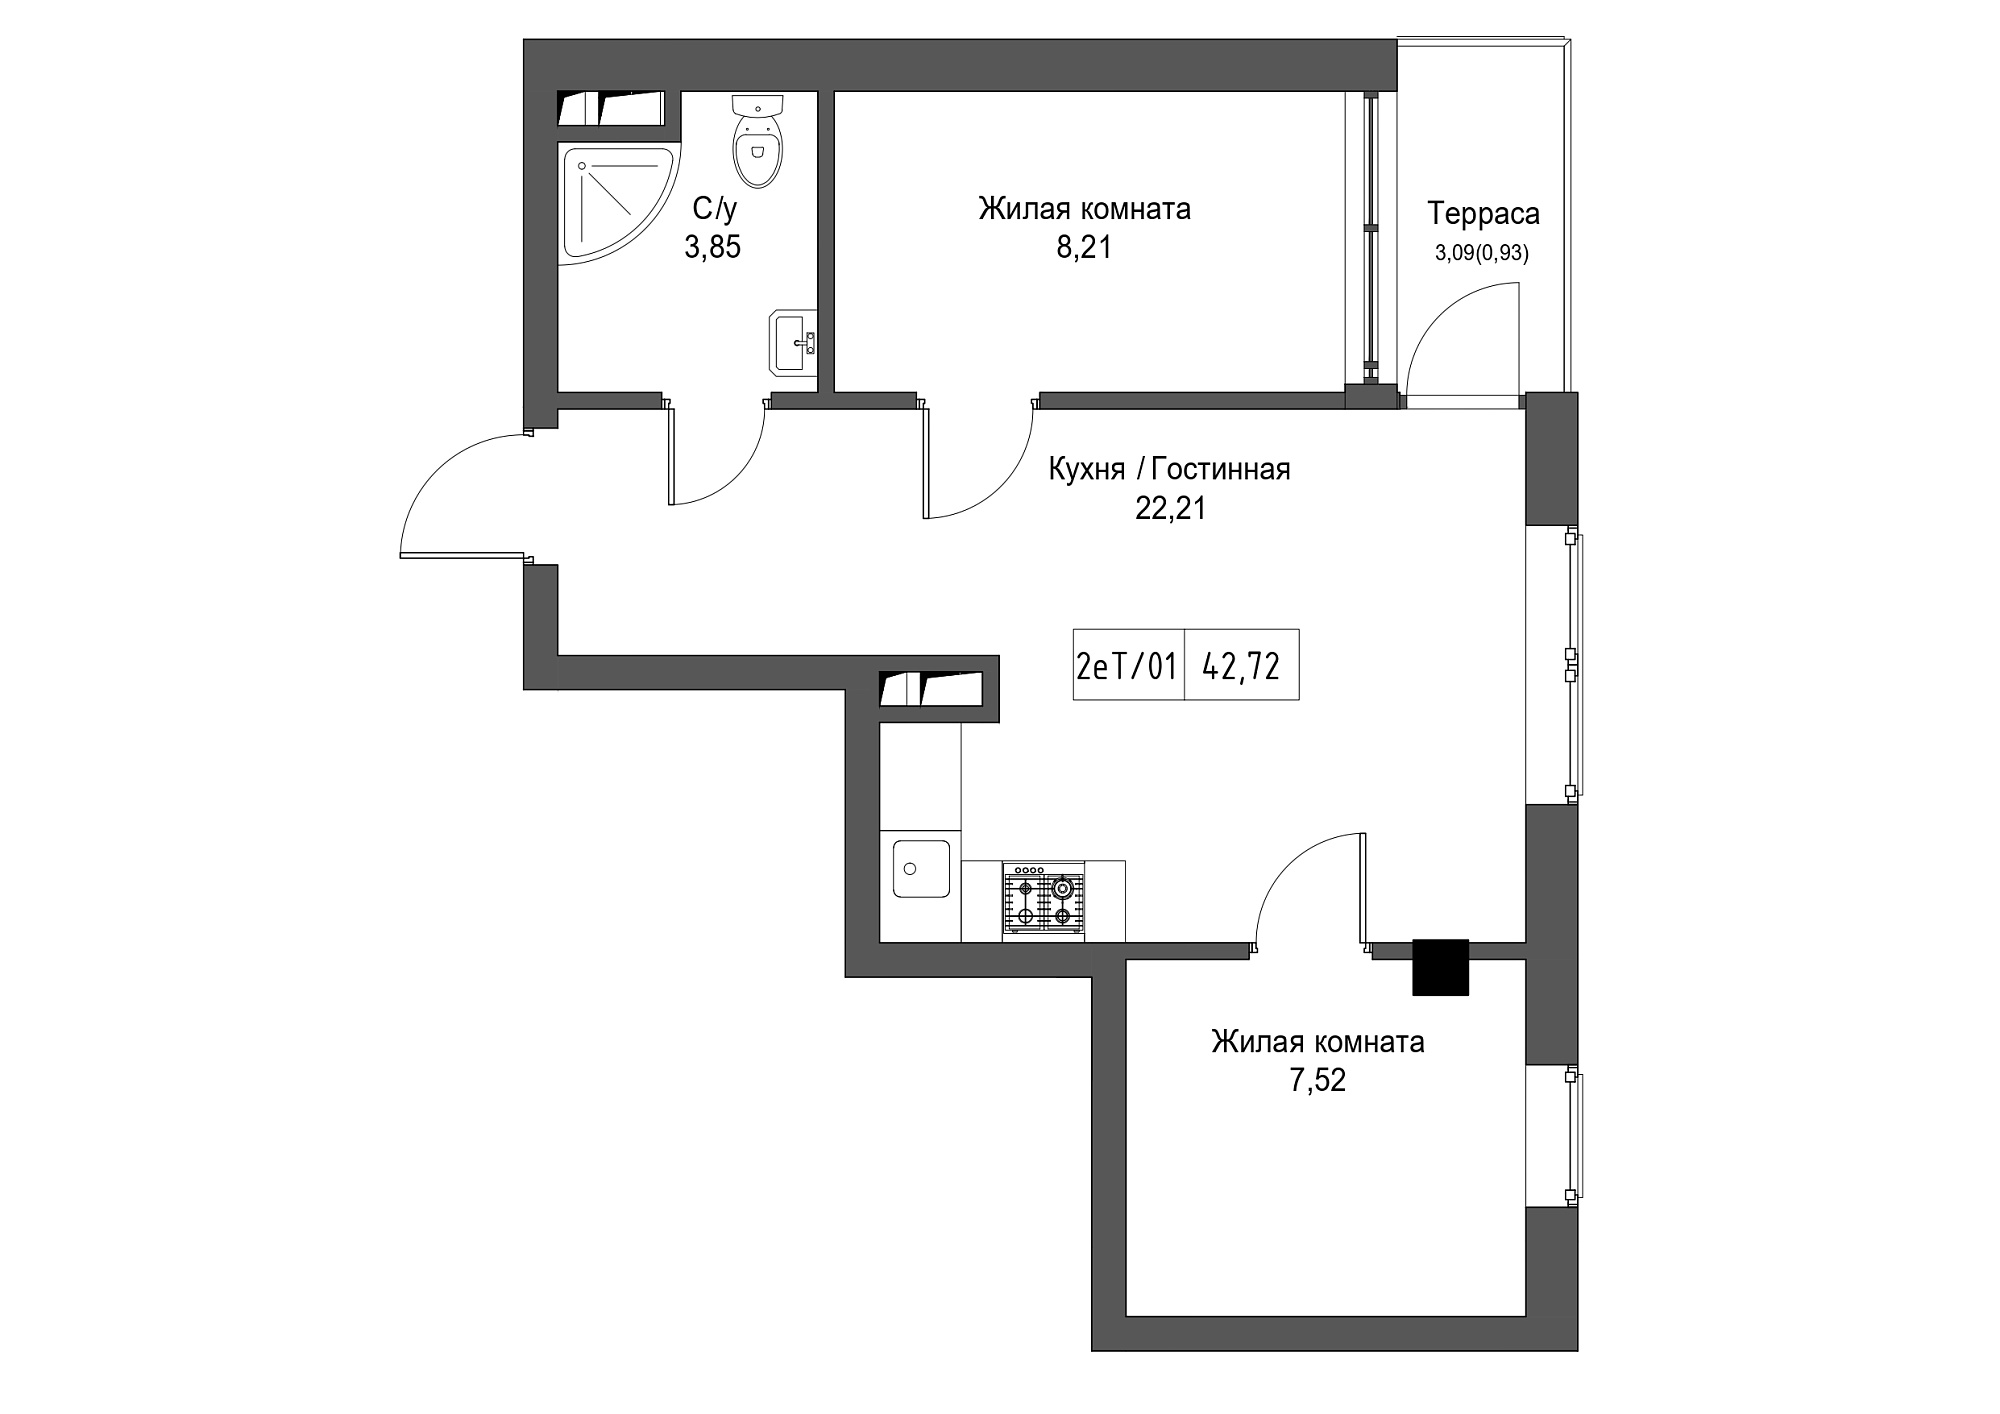 Планировка 2-к квартира площей 42.72м2, UM-002-02/0092.